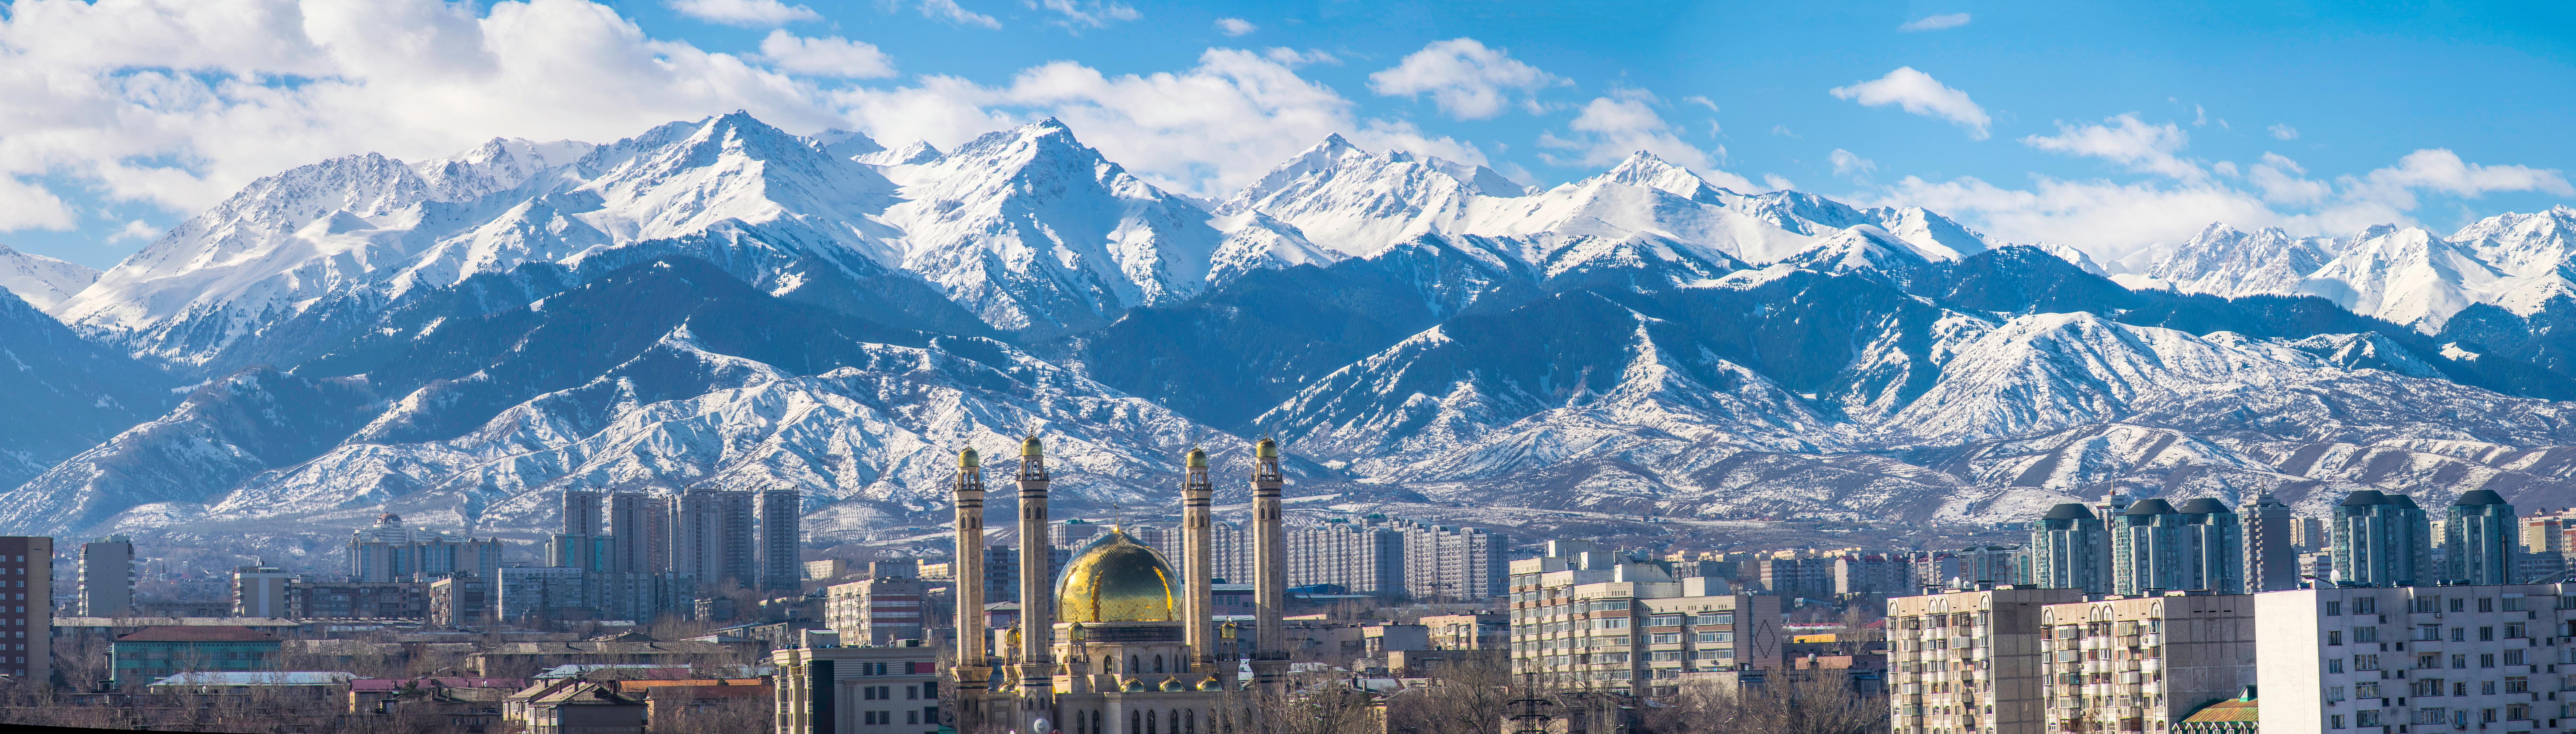 Almaty skyline - Souce: https://www.shutterstock.com/g/Almazoff